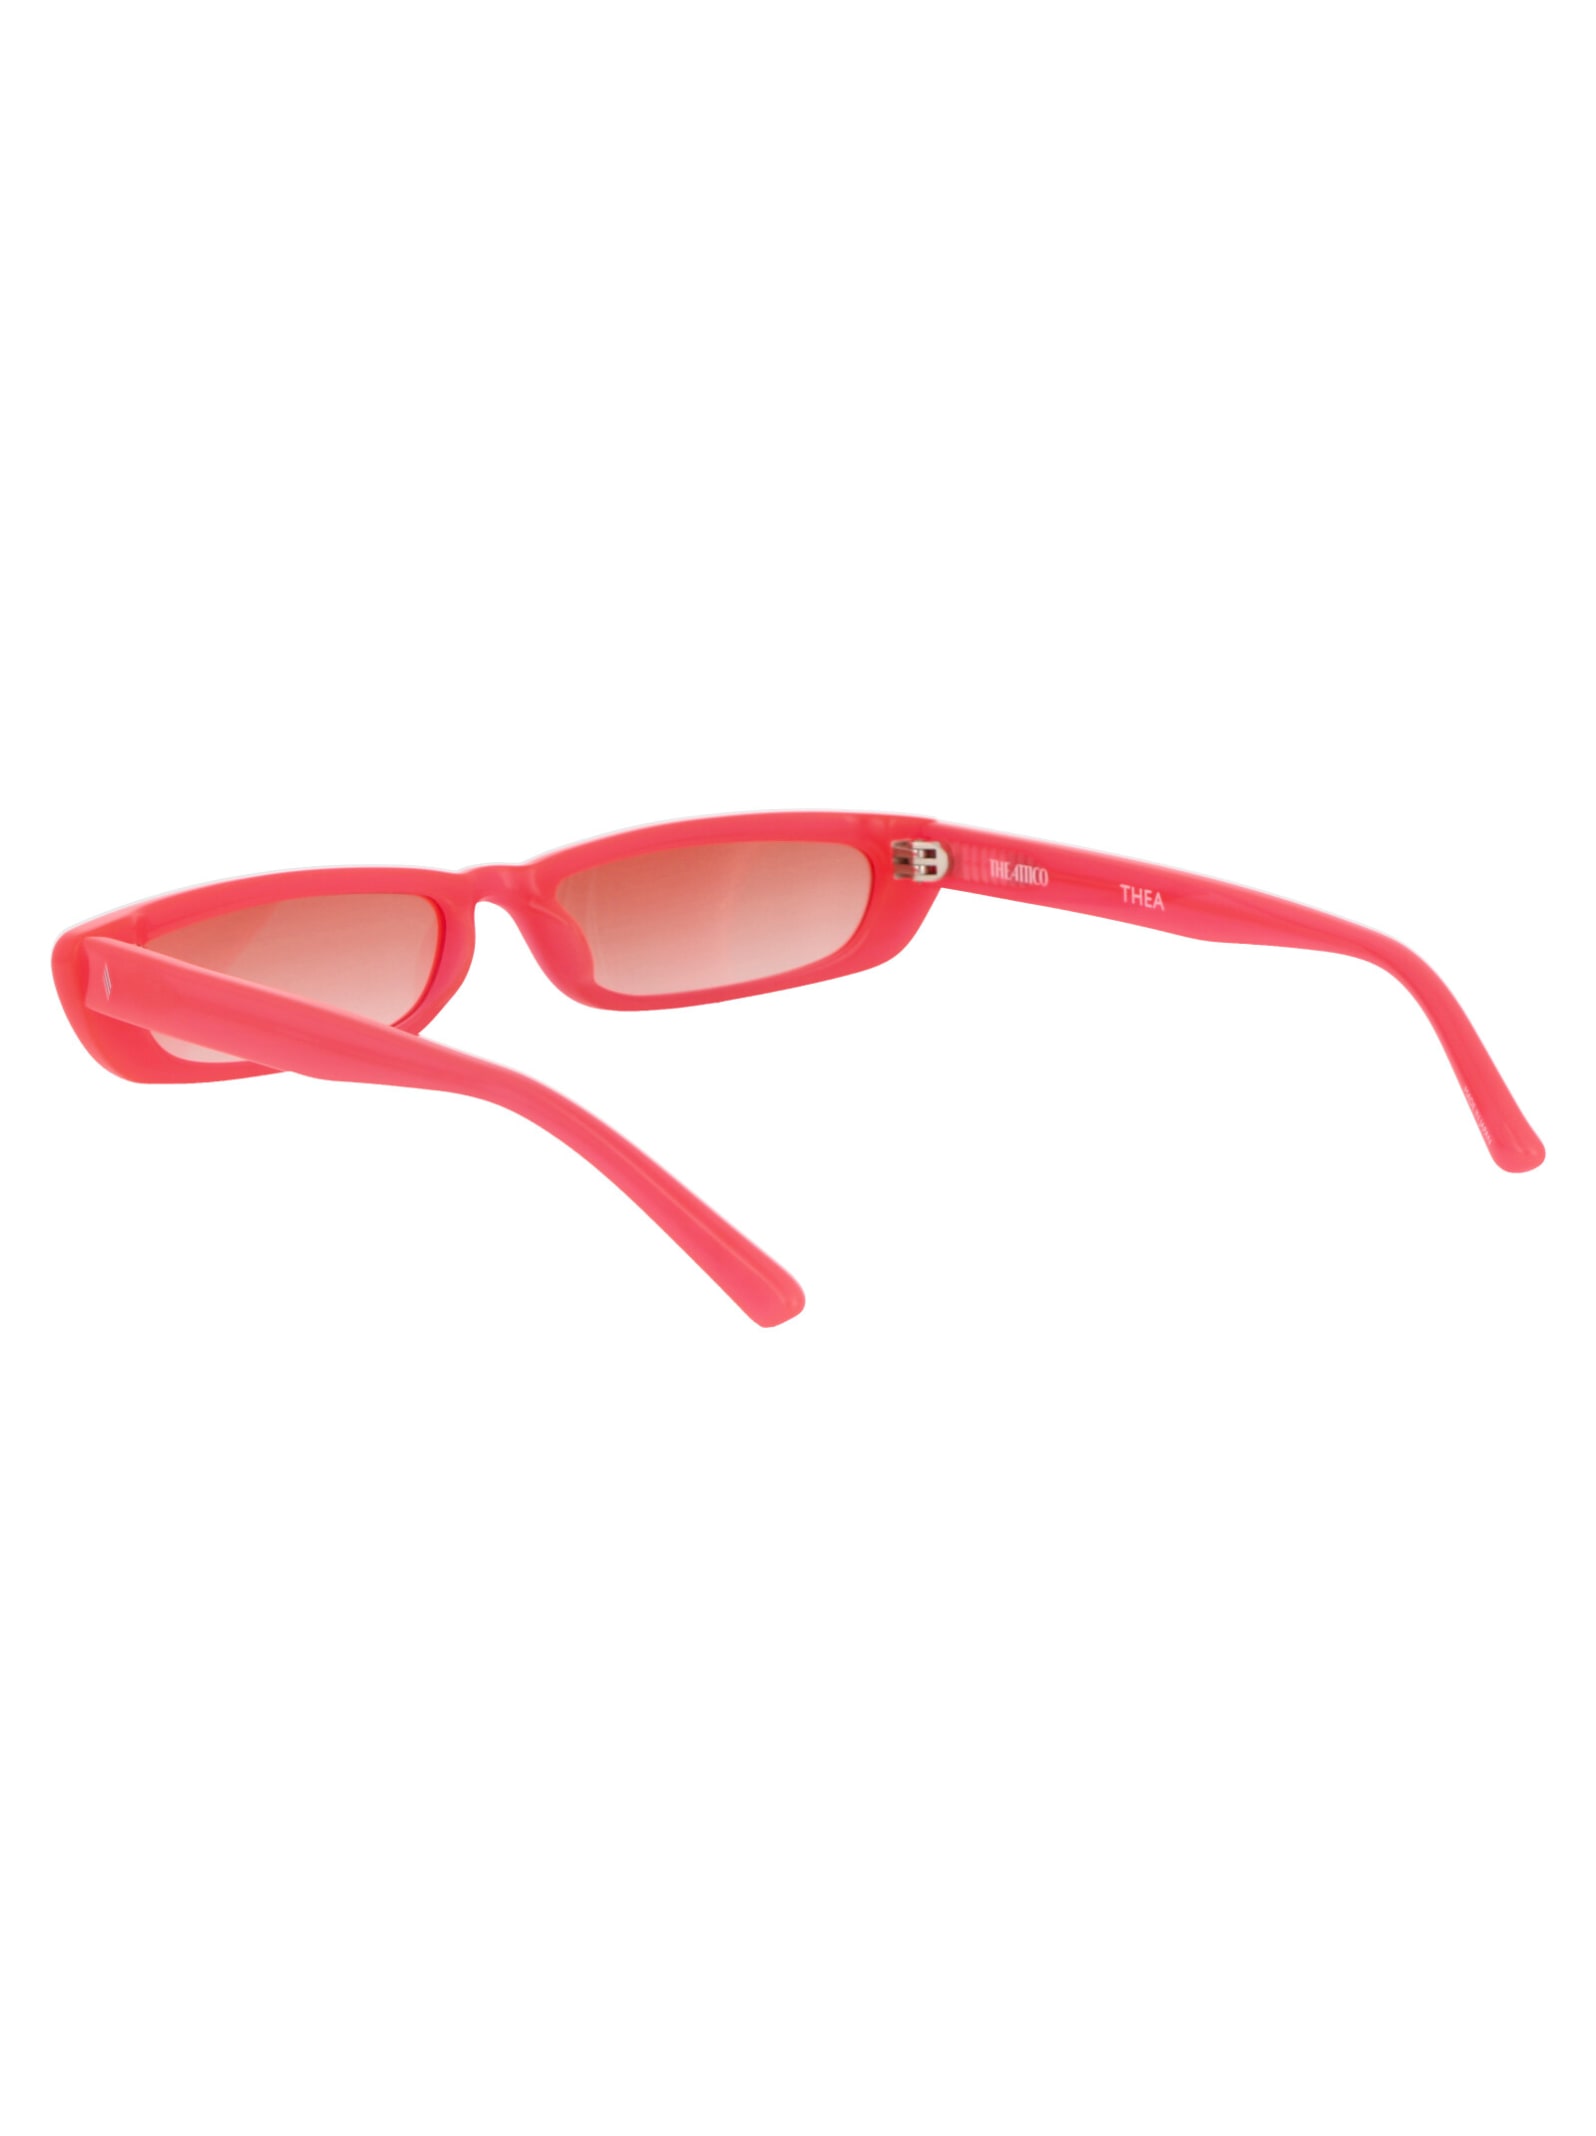 Shop Attico Thea Sunglasses In Neonpink/silver/orangegrad